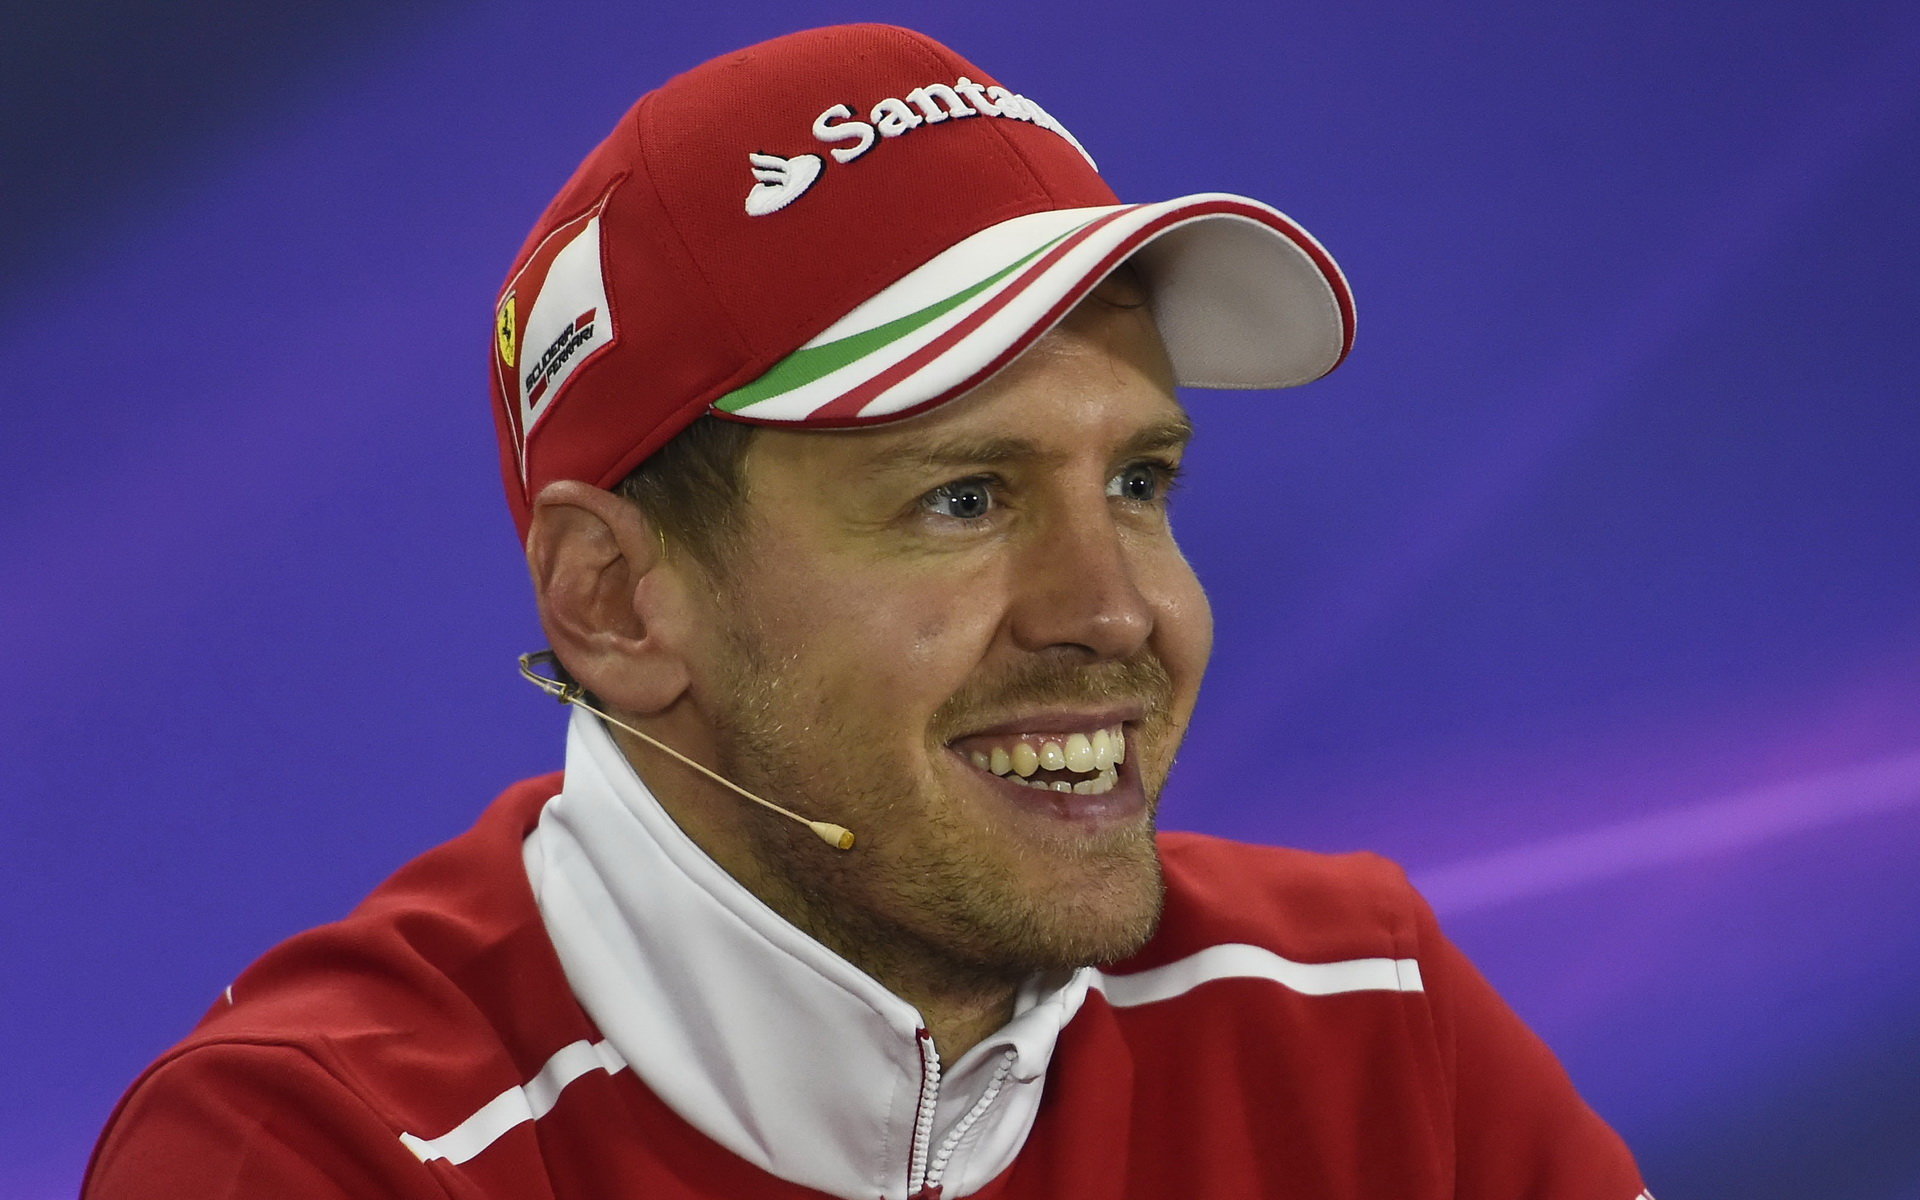 Má Sebastian Vettel zaječí úmysly?